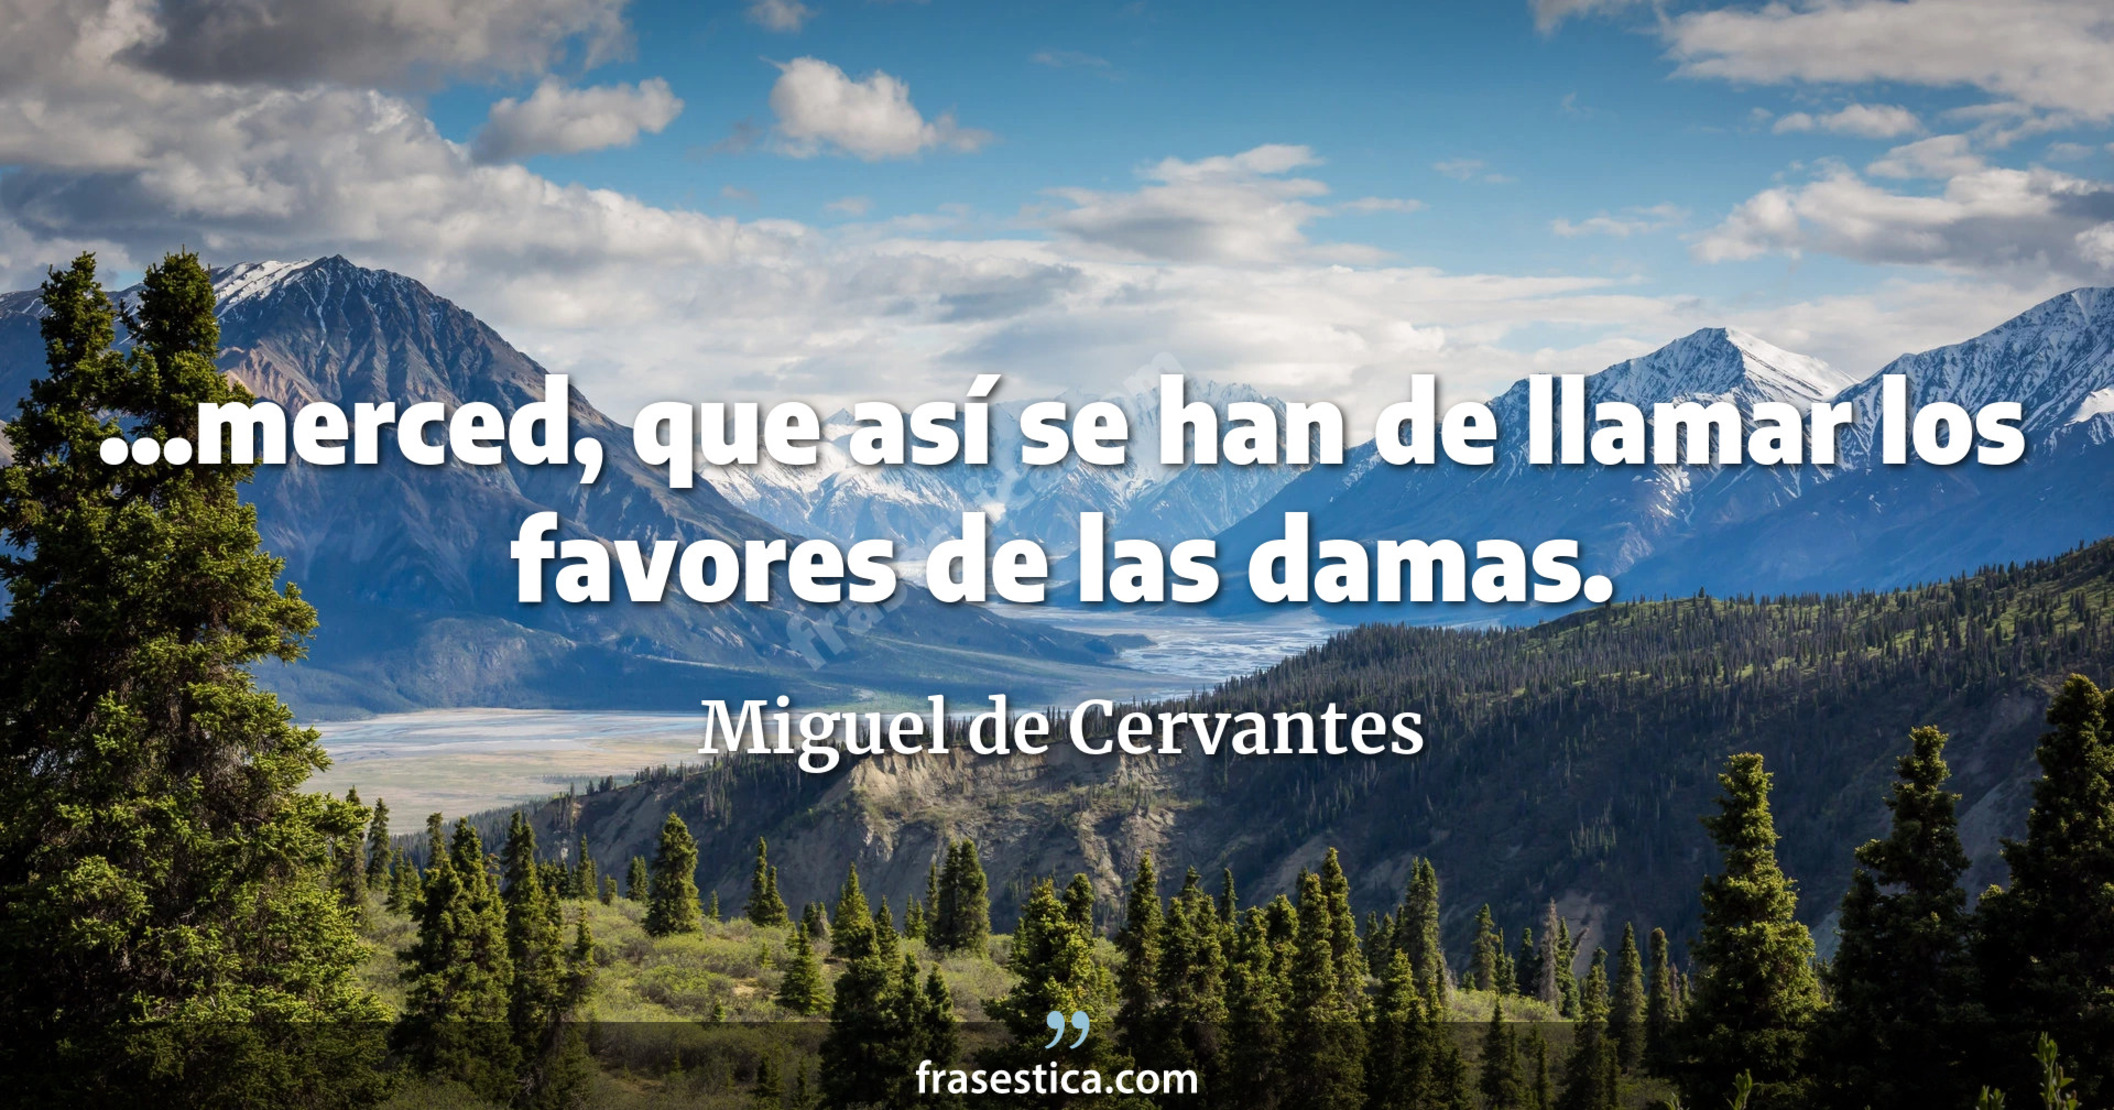 ...merced, que así se han de llamar los favores de las damas. - Miguel de Cervantes